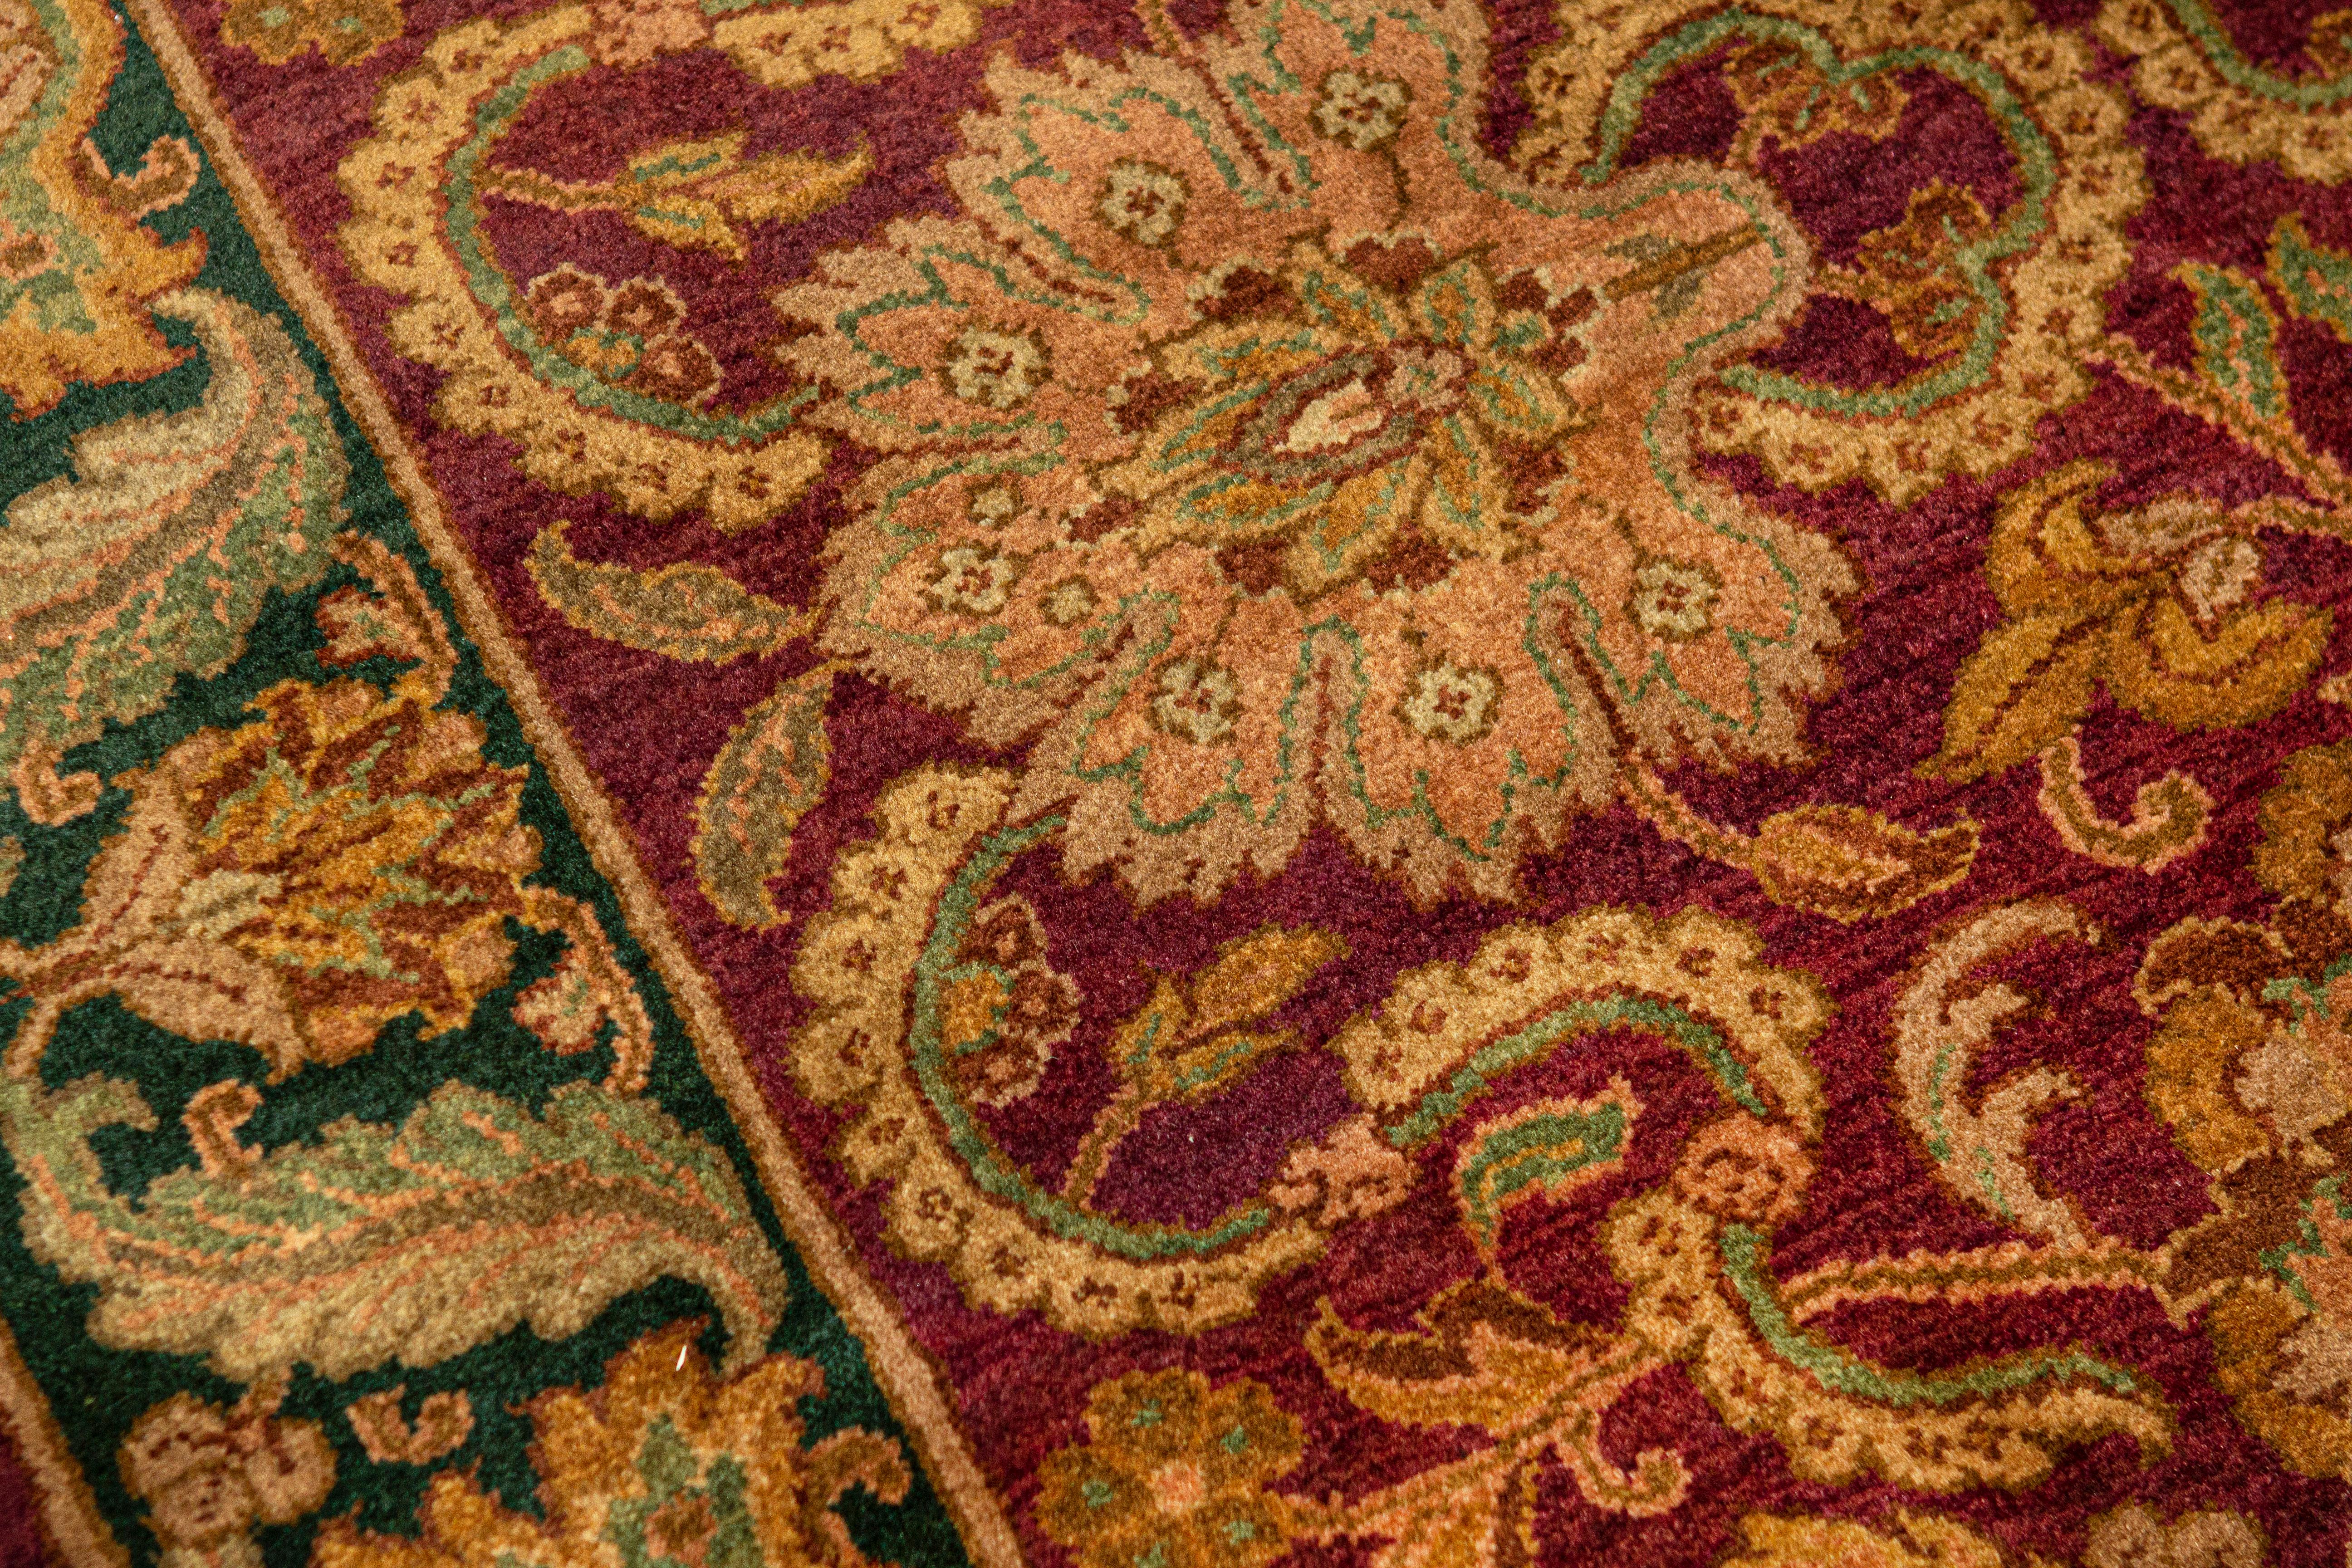 Cette collection s'inspire des tisseurs de tapis indiens du XVIe siècle, qui créaient les plus beaux tapis pour les cours royales des empereurs moghols. Basé sur d'authentiques designs orientaux et tissé à la main dans le style traditionnel. Mesures